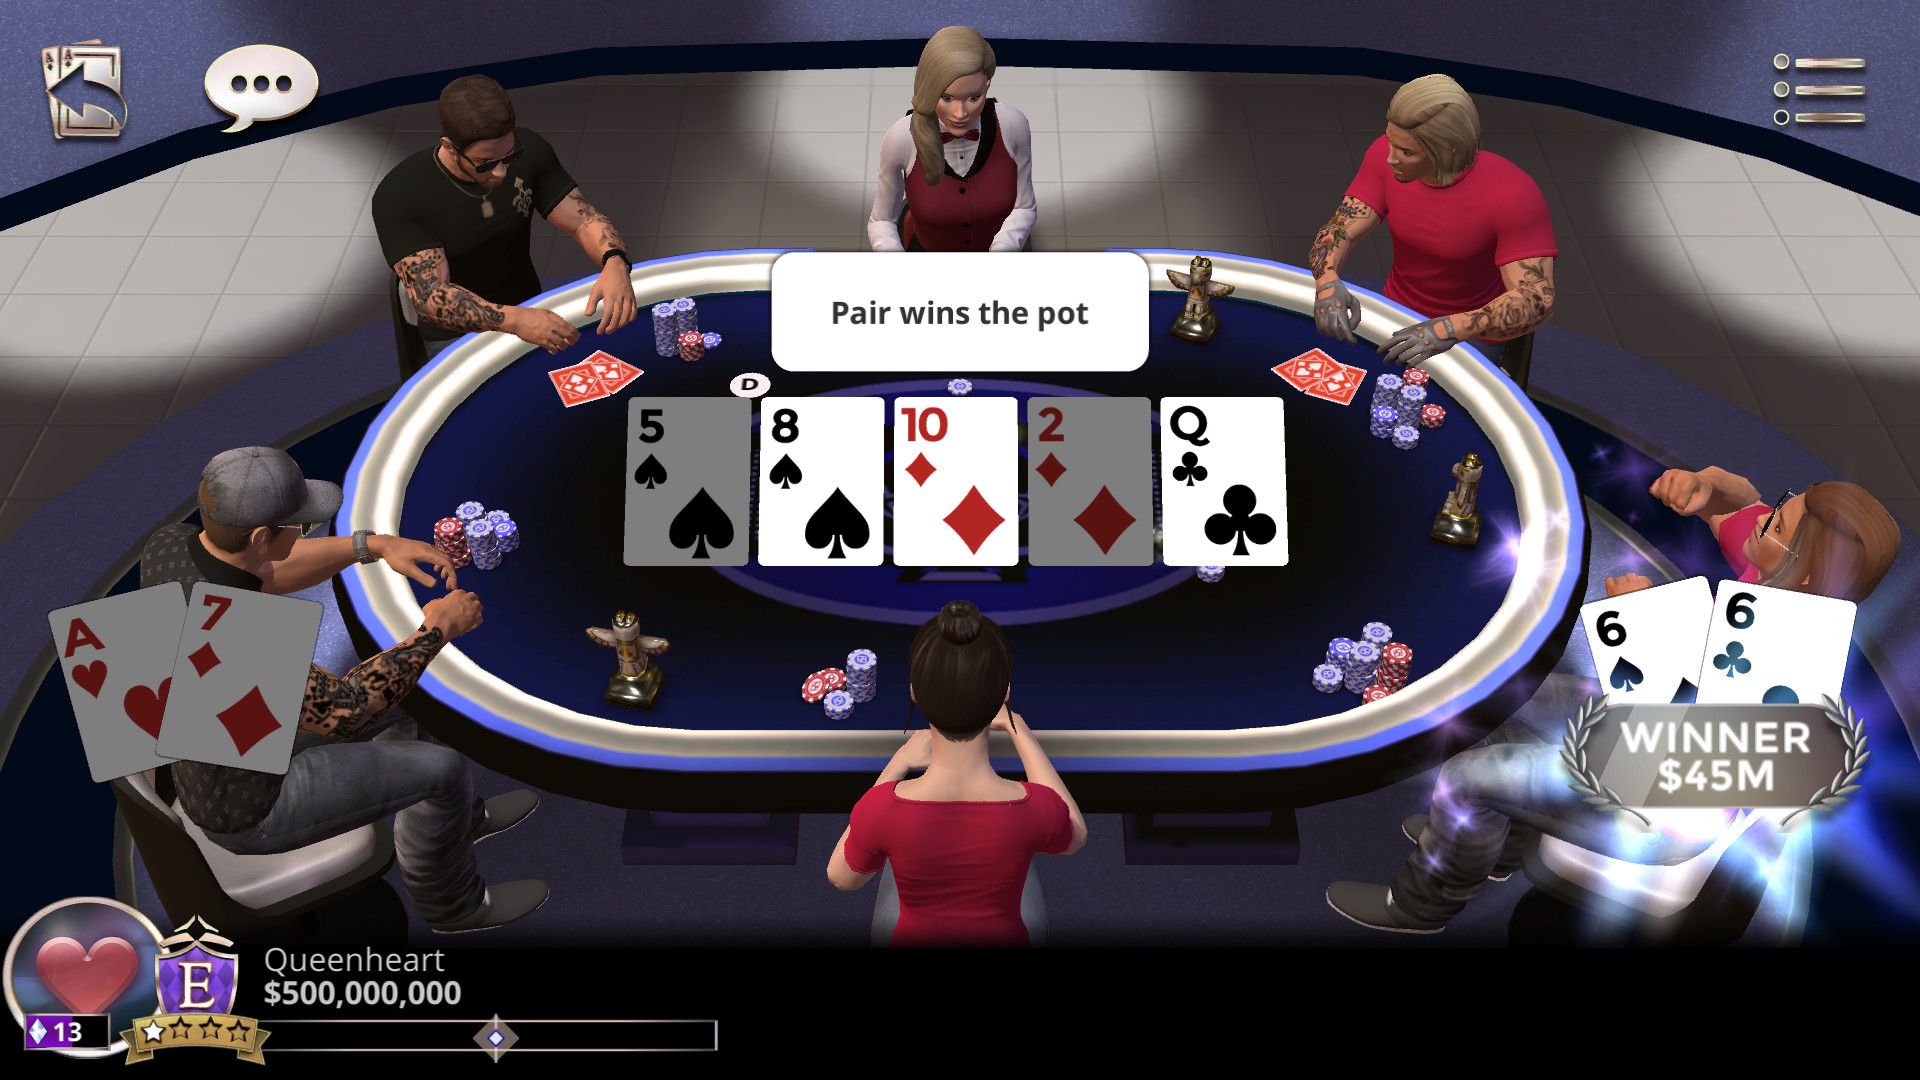 Comprar Mesa Poker Deluxe Cash - ¡Promoción! - Tienda del Poker